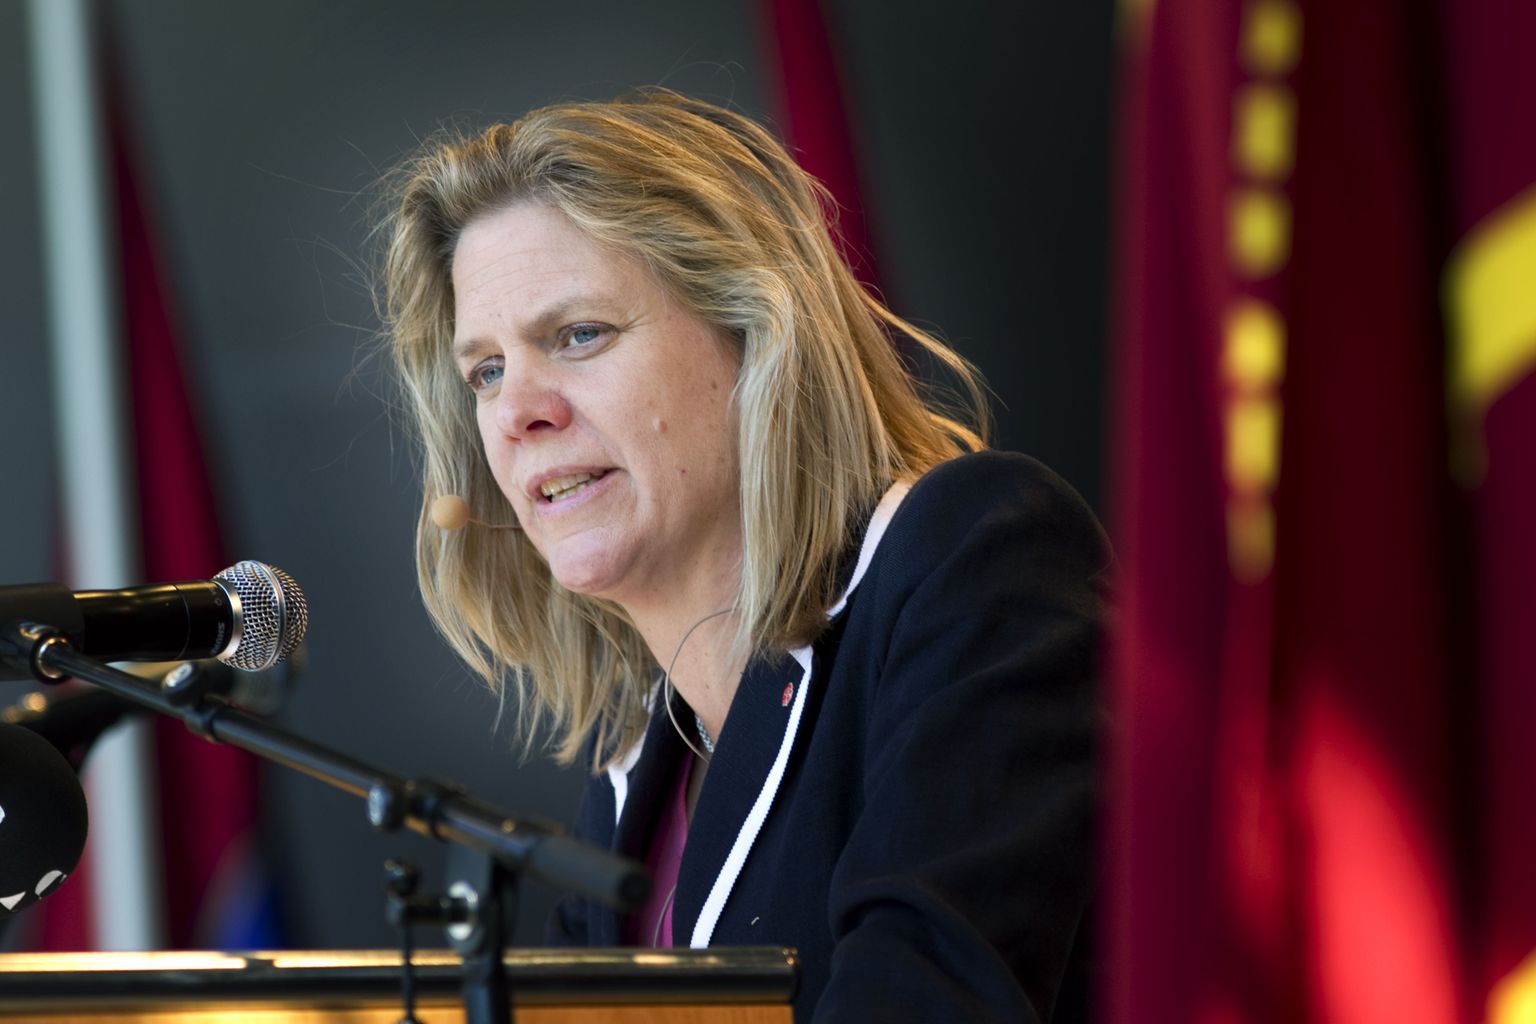 Rootsi rahandusminister Magdalena Andersson sotsiaaldemokraatliku partei kongressil esinemas.